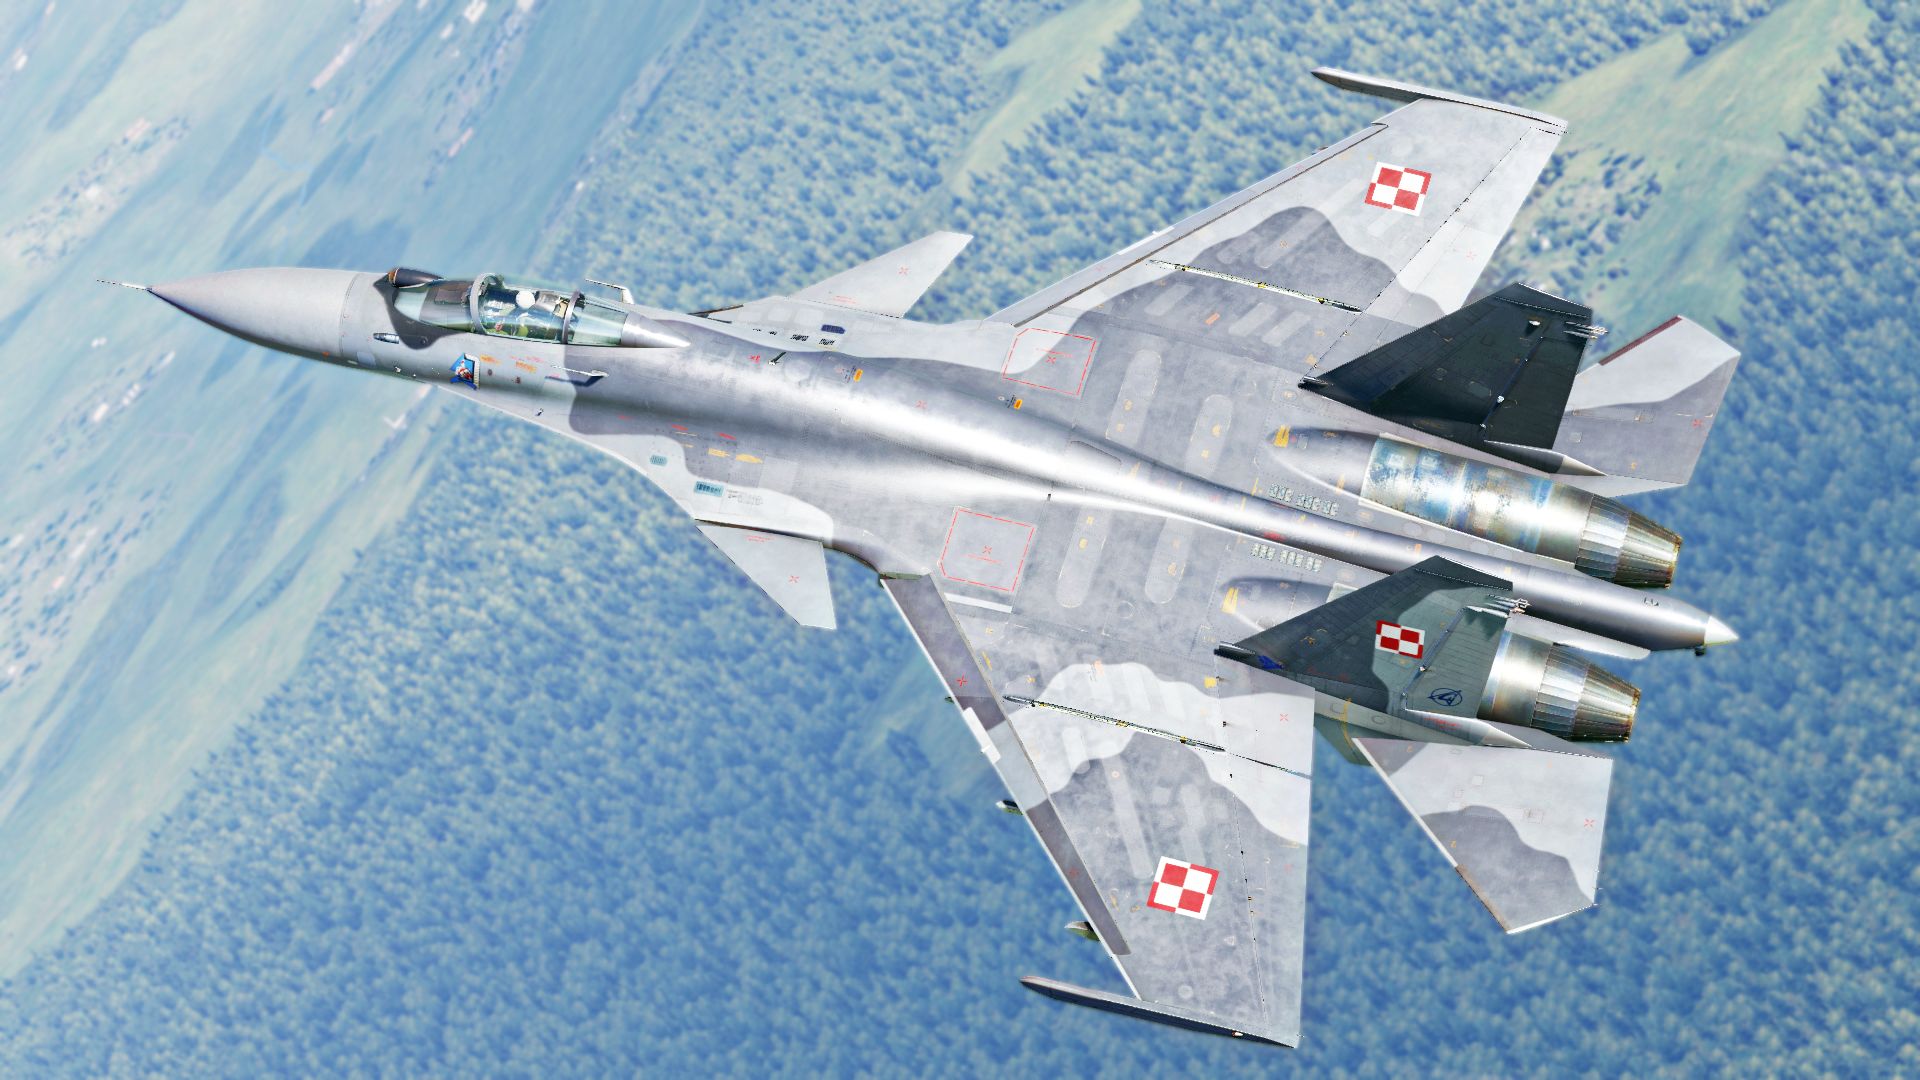 Polish Air Force Su-33